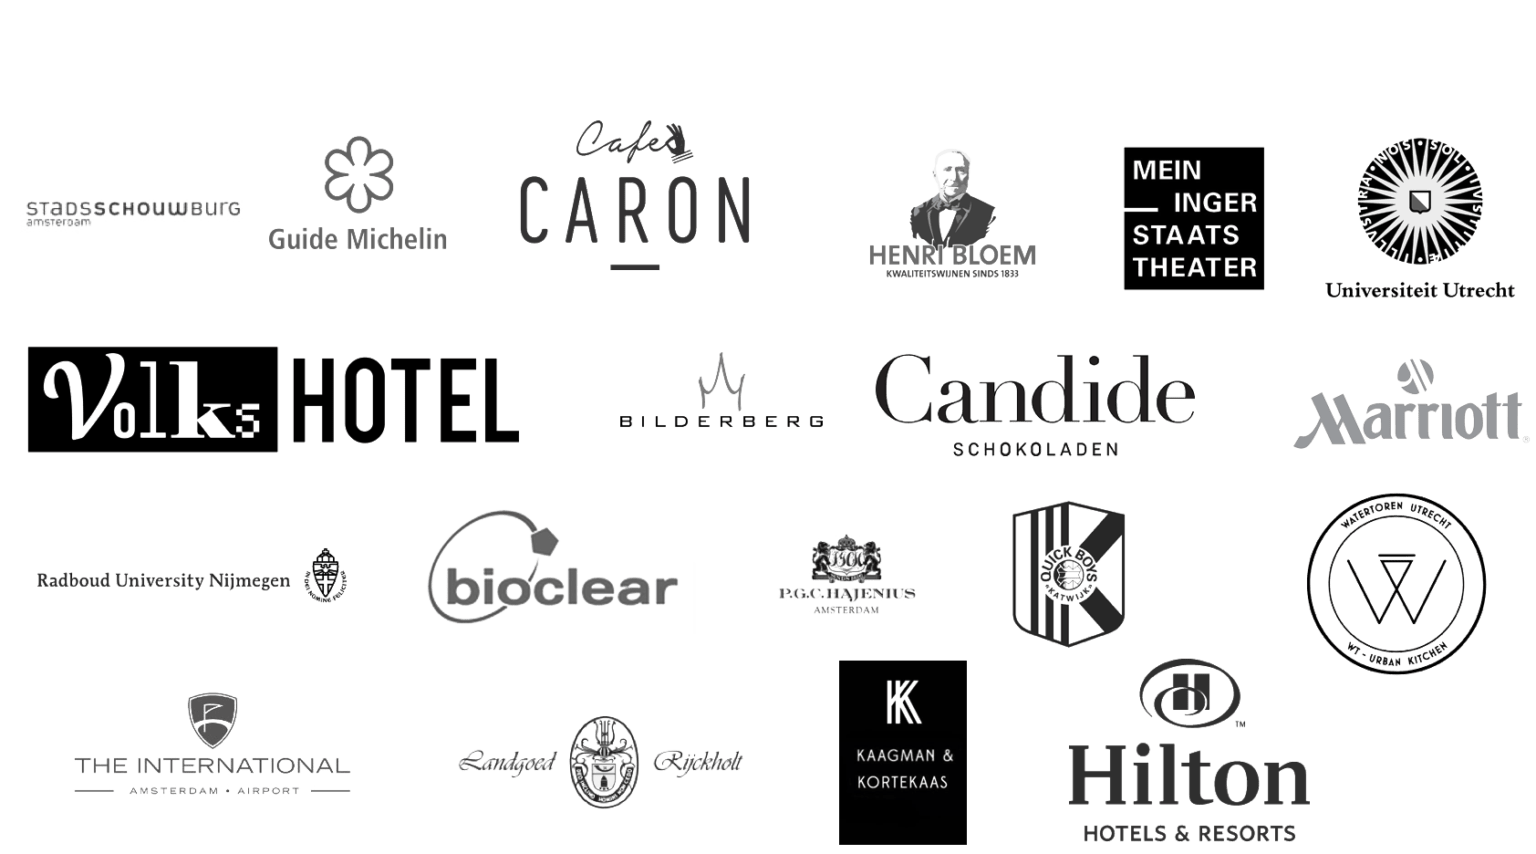 Eine Collage aus verschiedenen Unternehmens- und Organisationslogos, darunter Bildungseinrichtungen, Hotels, Theater und andere Unternehmen, dargestellt in Schwarzweiß.